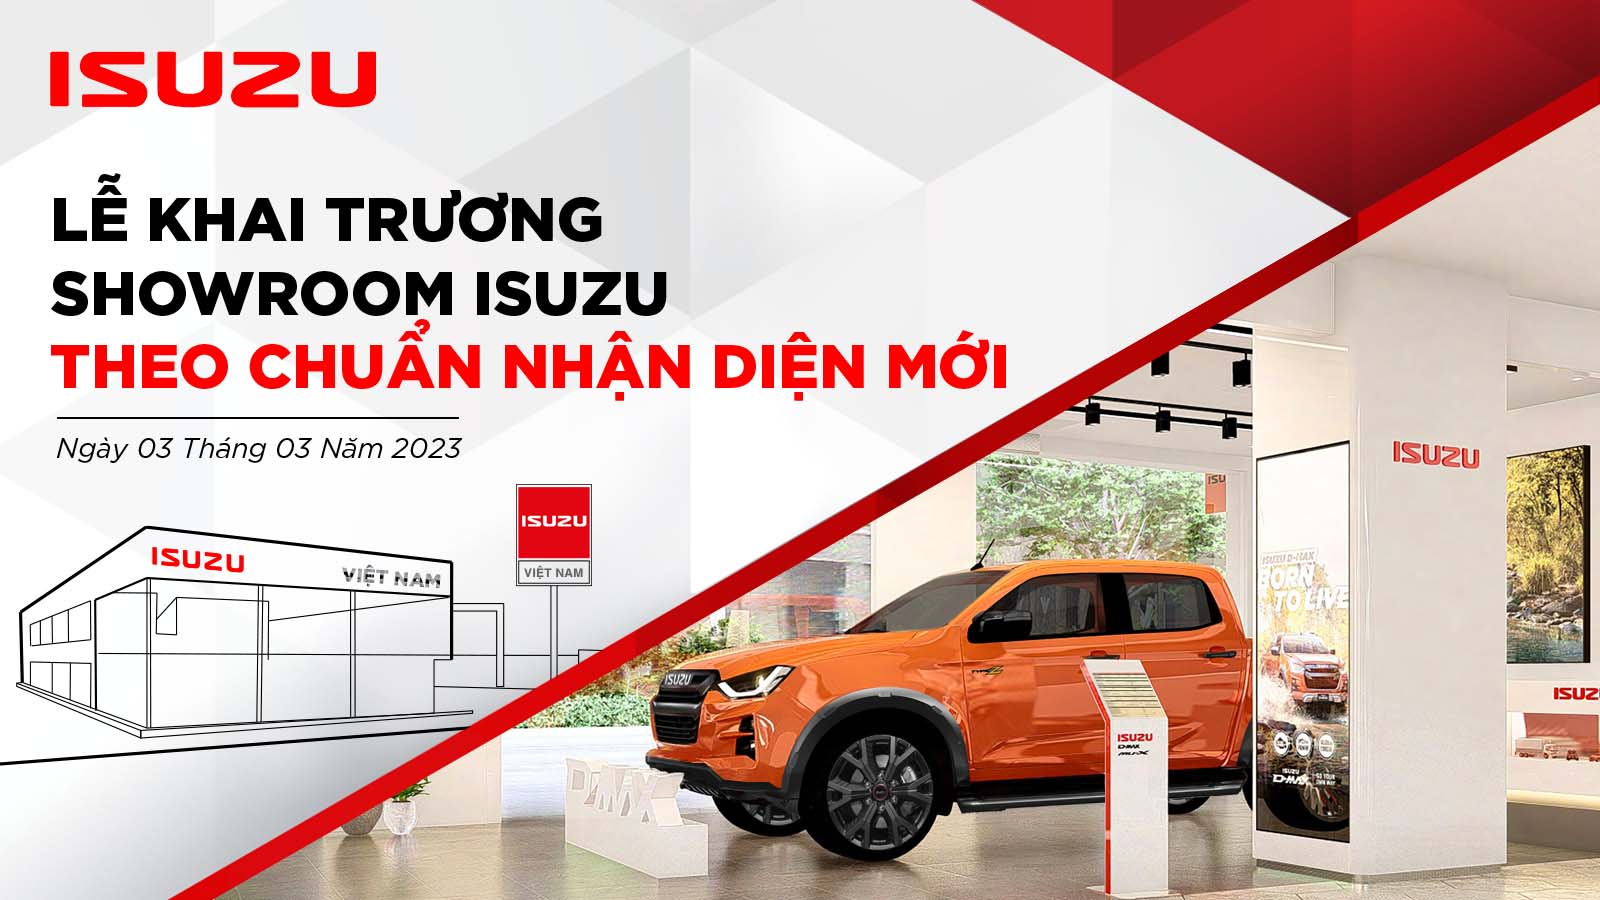 Màu sắc và hình ảnh nhận diện thương hiệu mới xe Isuzu